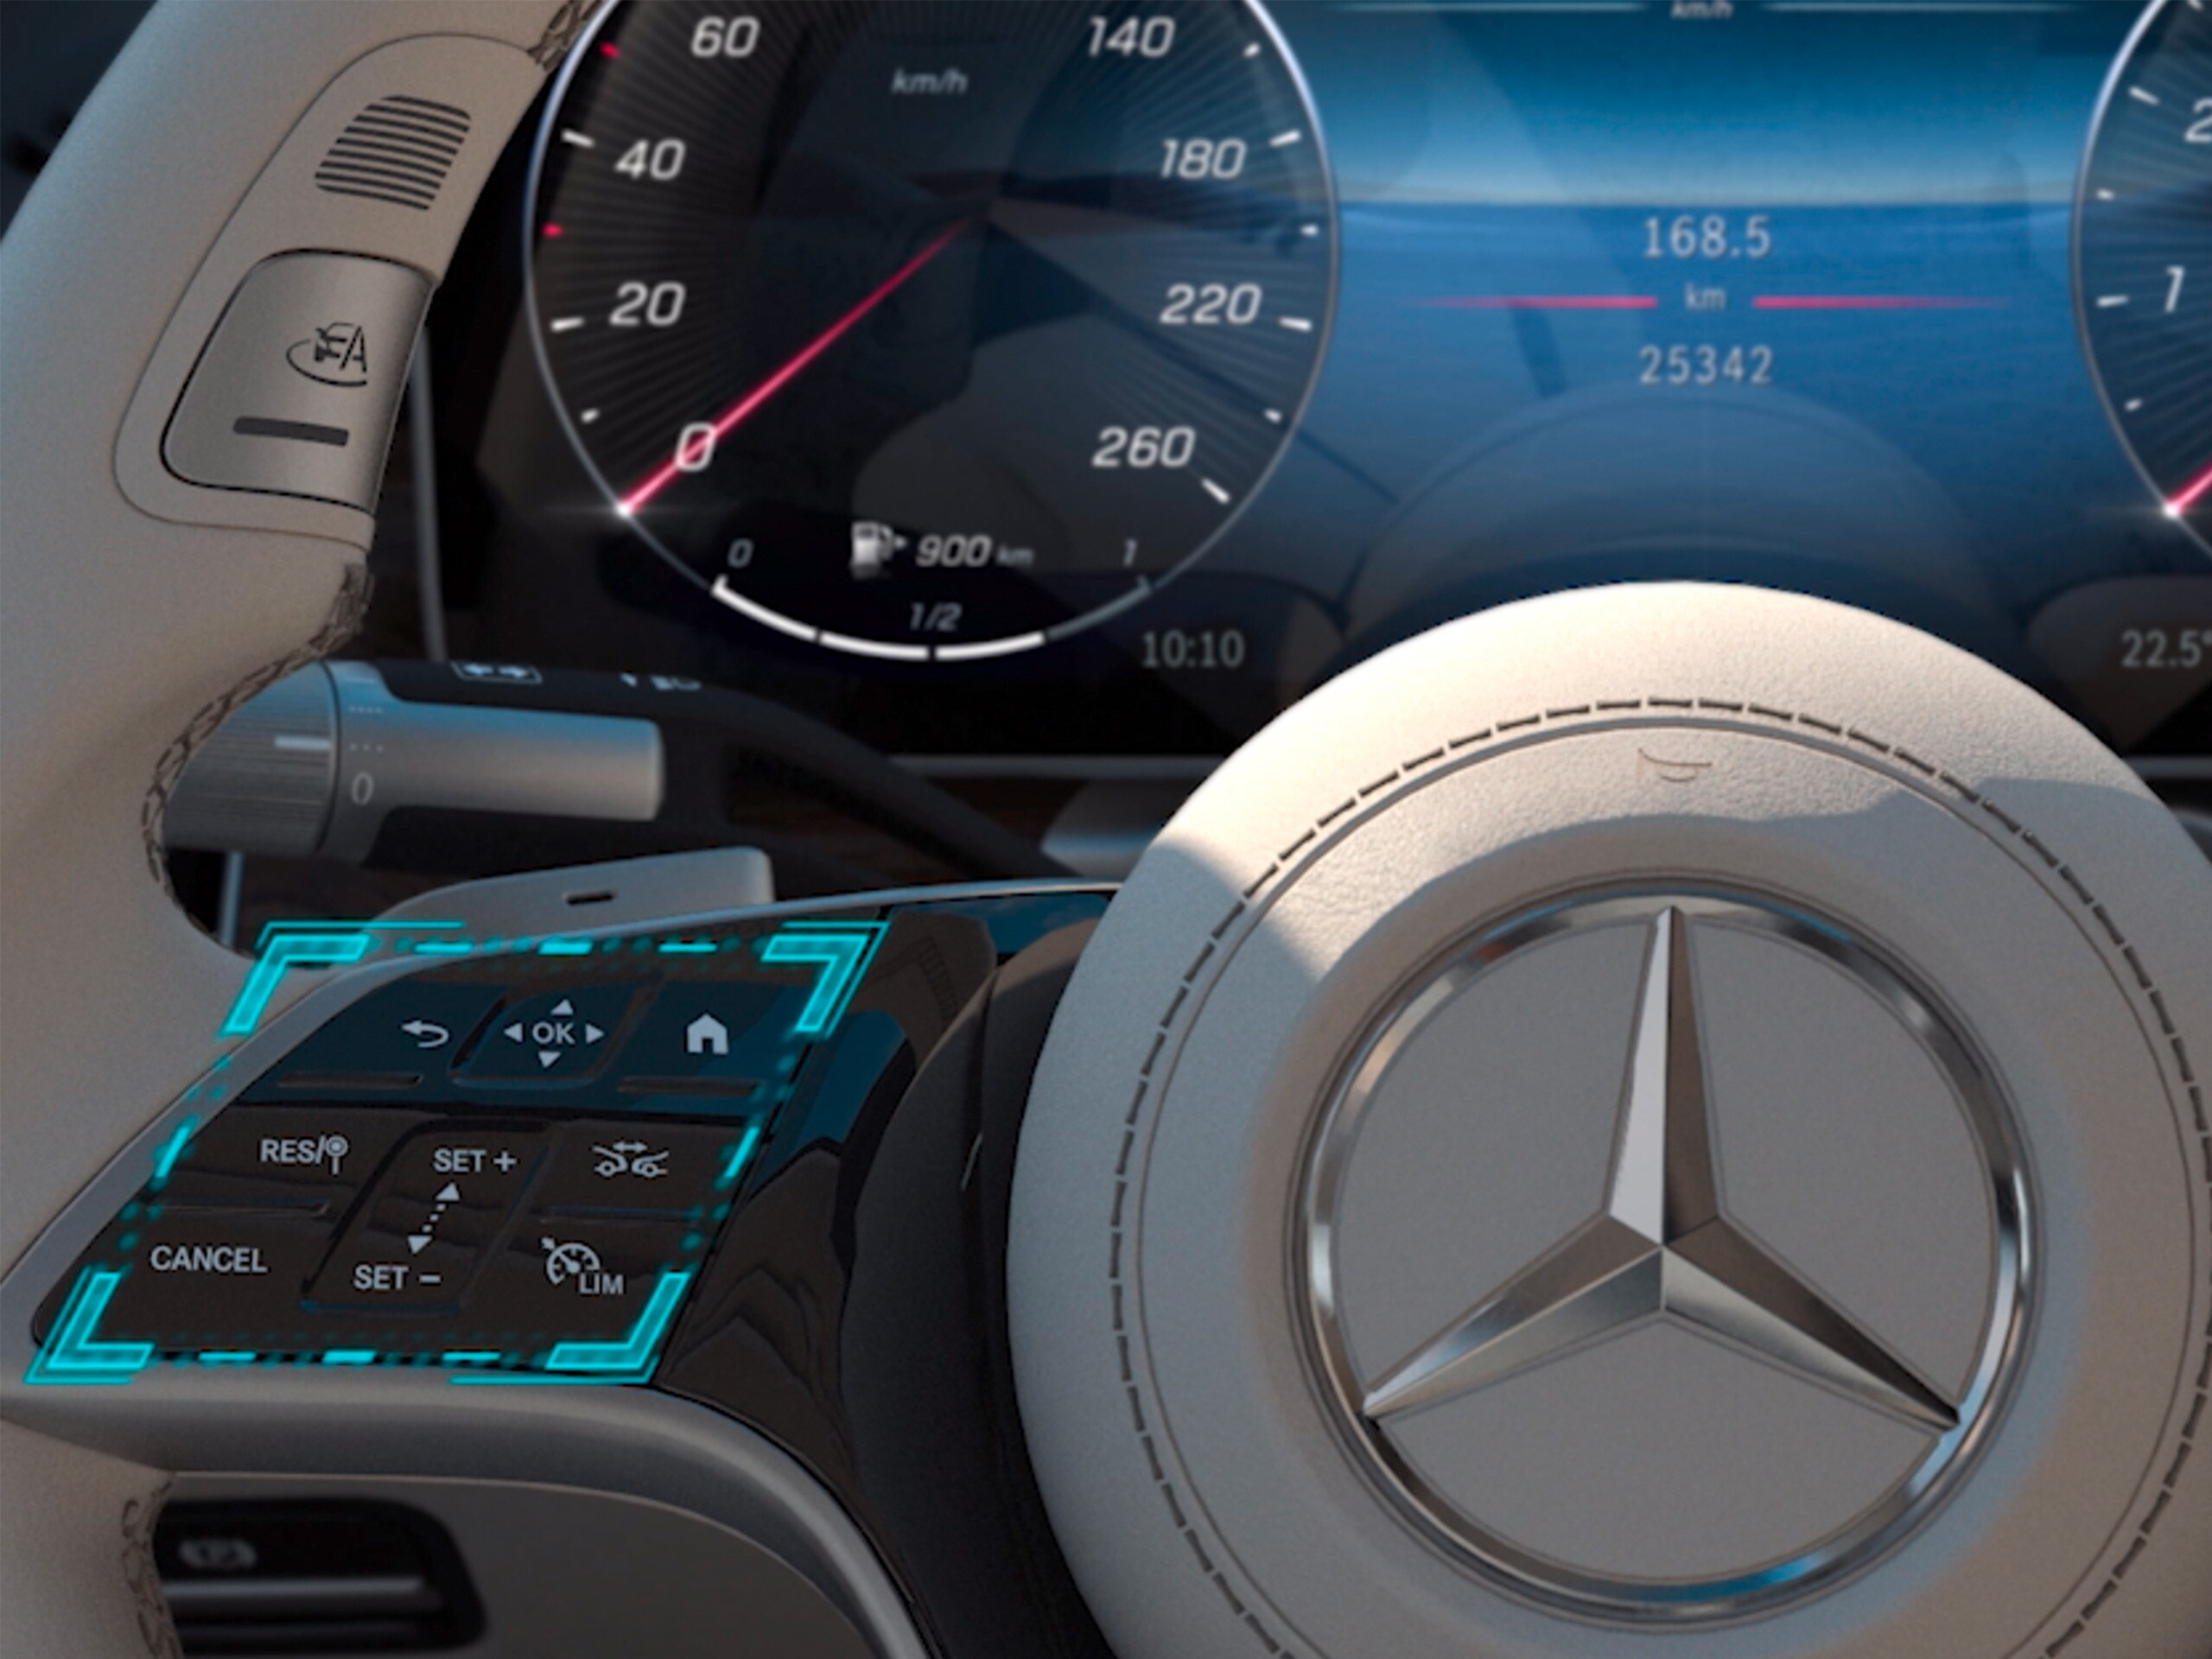 El vídeo muestra el funcionamiento del sistema de manejo táctil MBUX del nuevo Clase C Sedán de Mercedes-Benz.